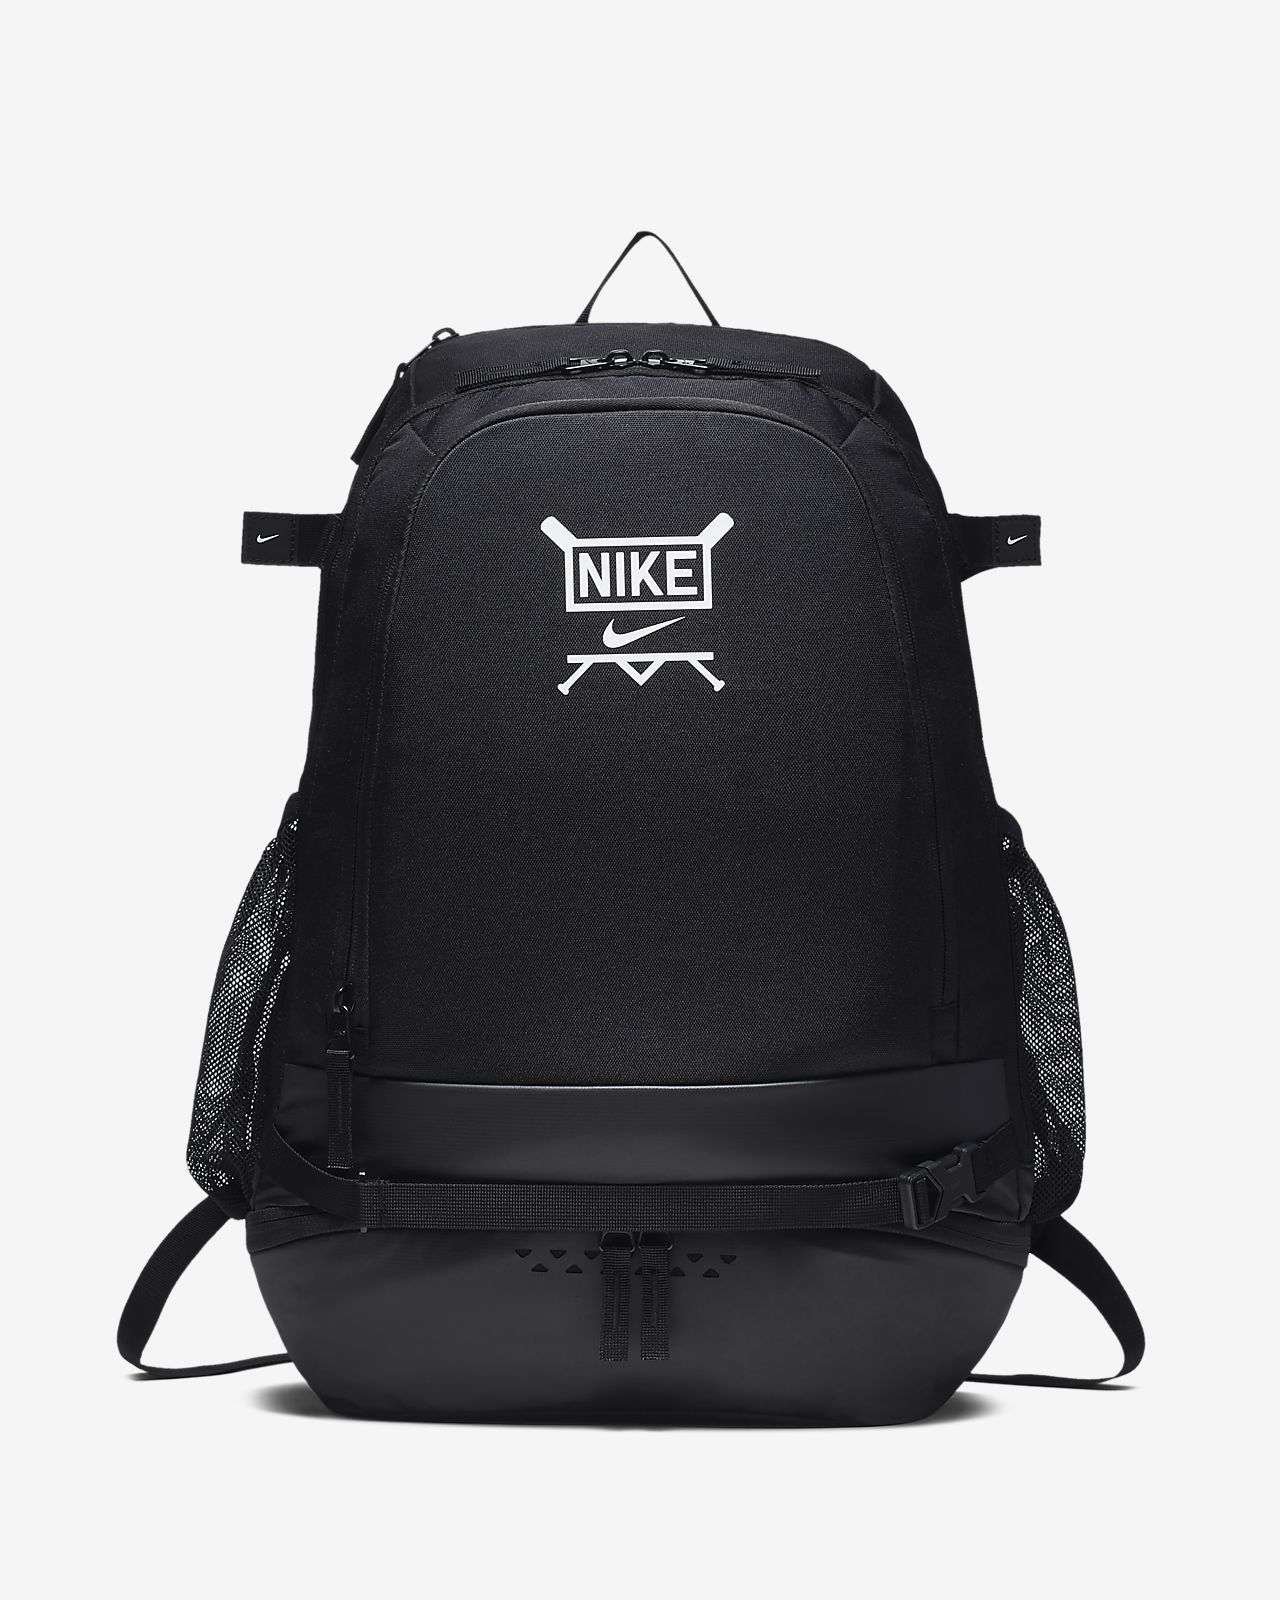 Brand new baseball vapor backpack